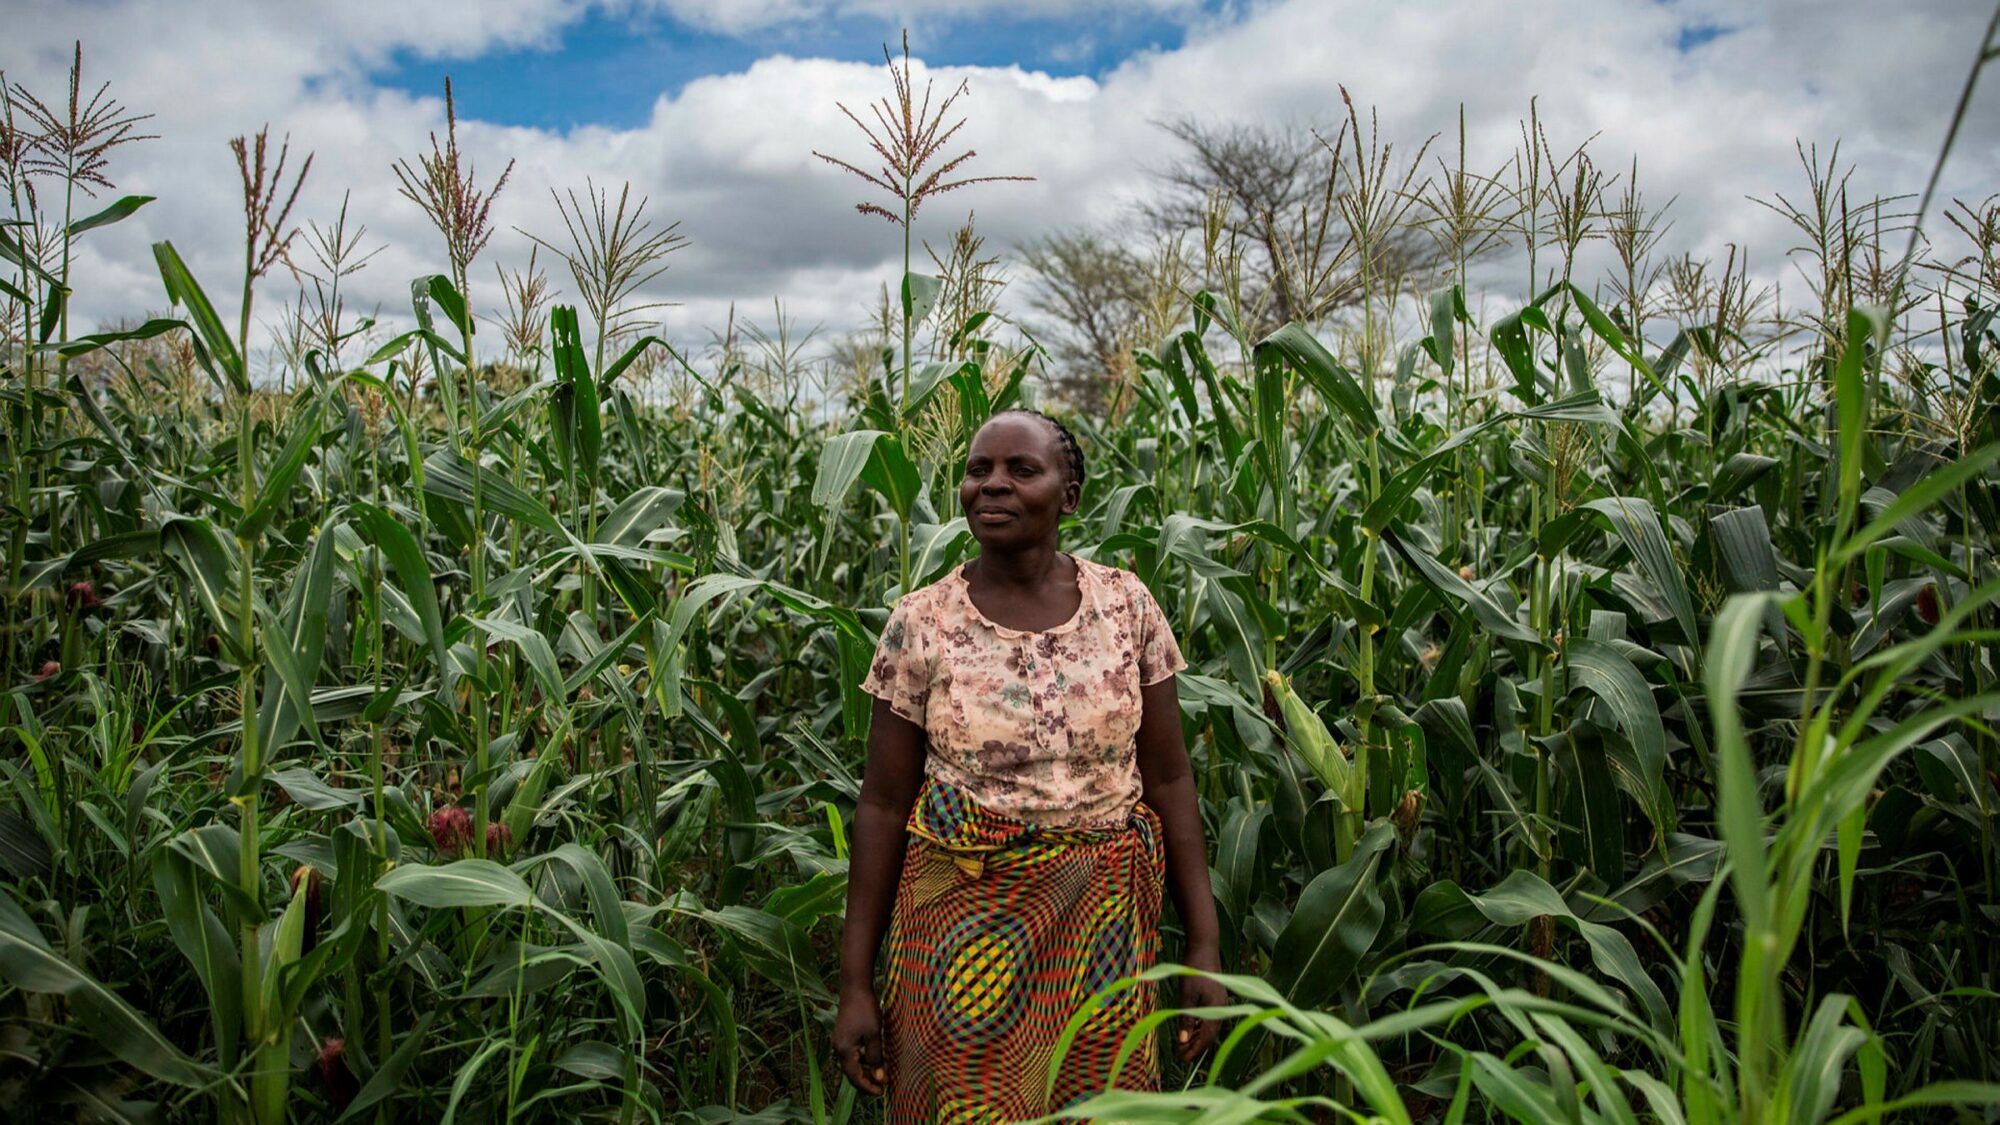 Trabajo en red para combatir la inseguridad alimentaria en una región africana golpeada por la violencia